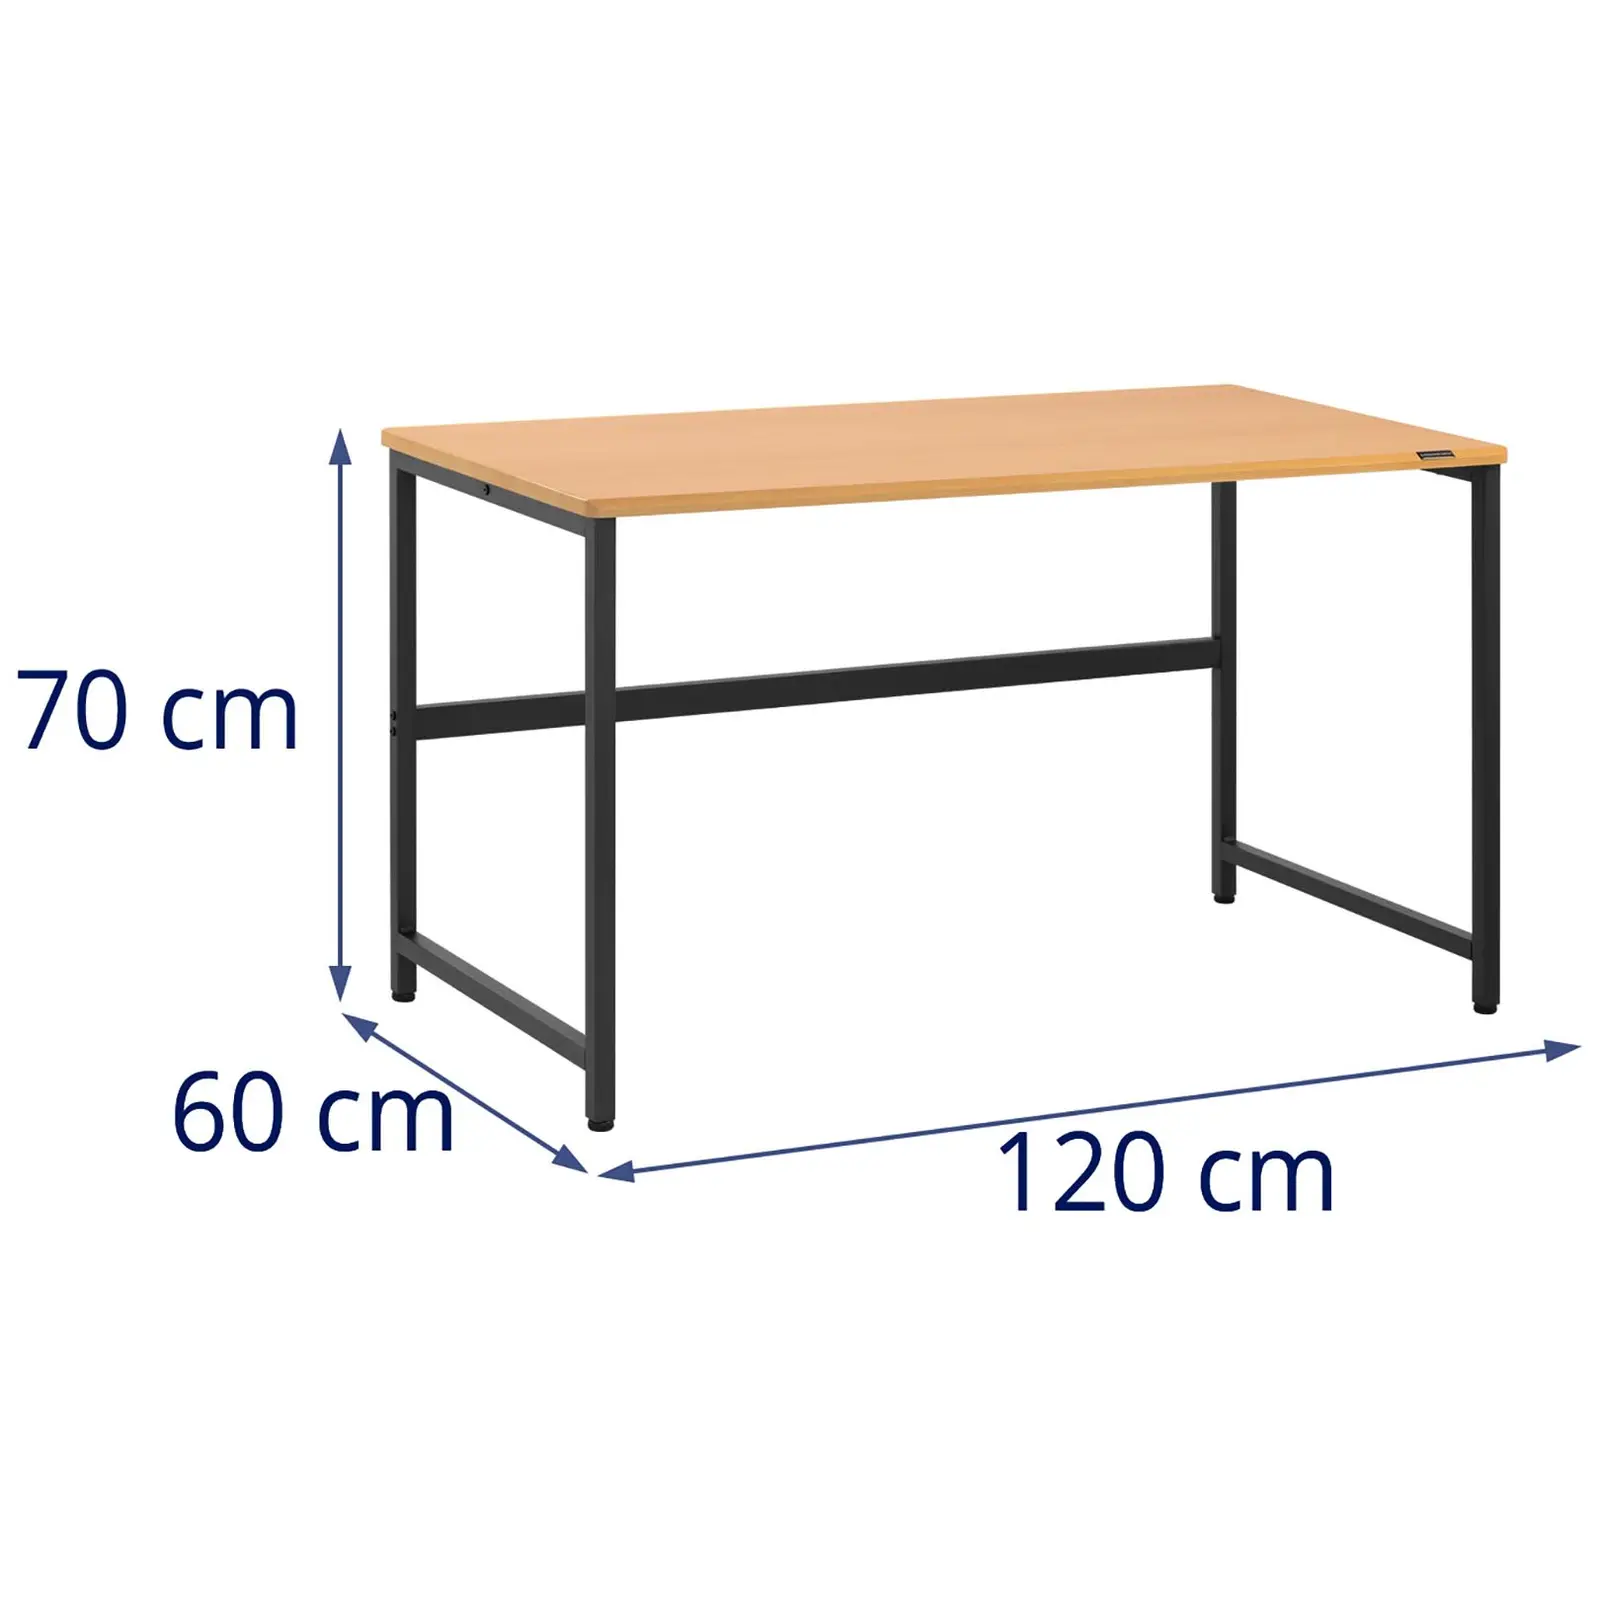 Schreibtisch - 120 x 60 cm - braun